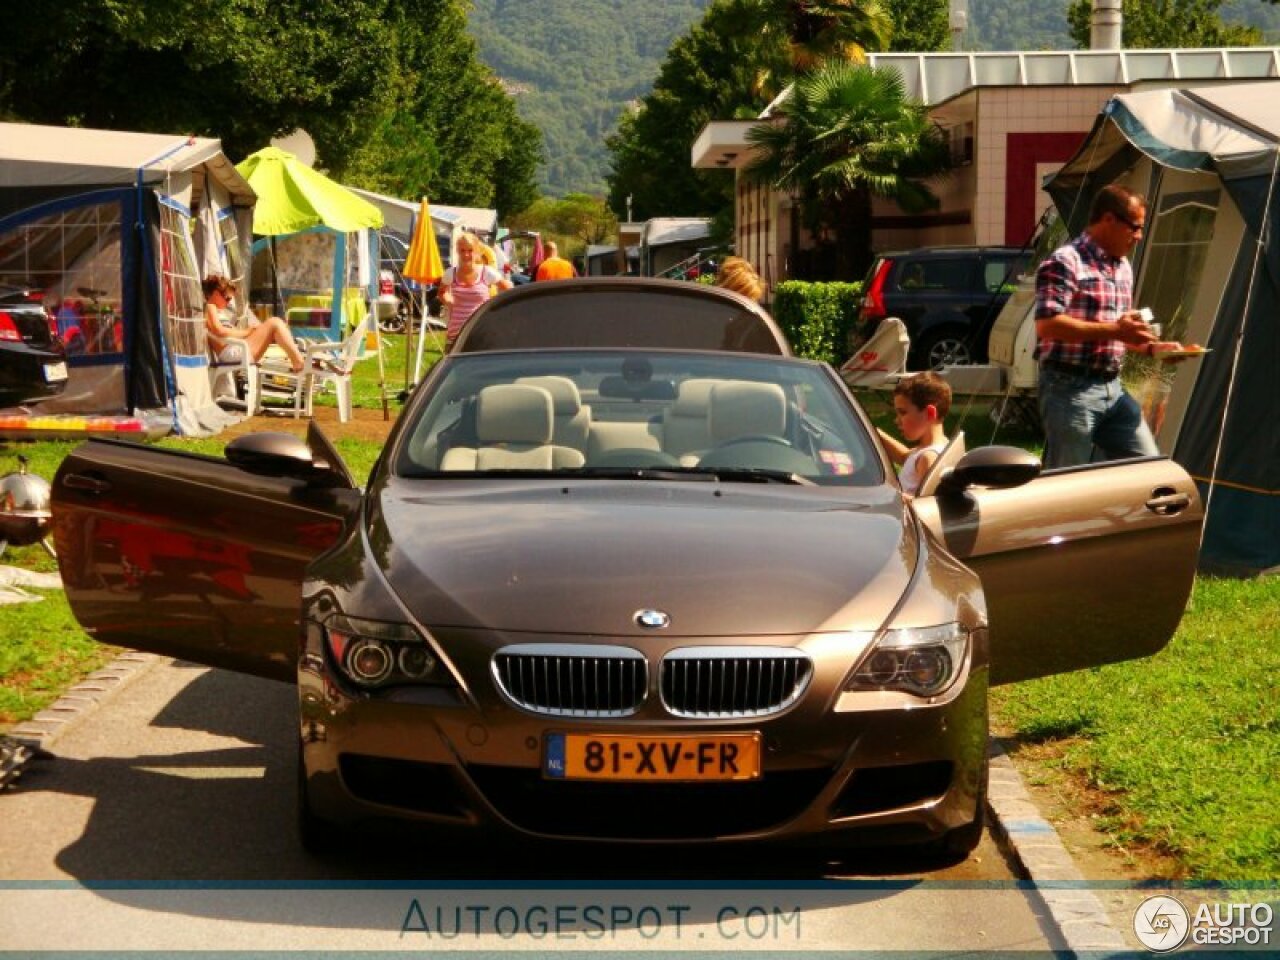 BMW M6 E64 Cabriolet